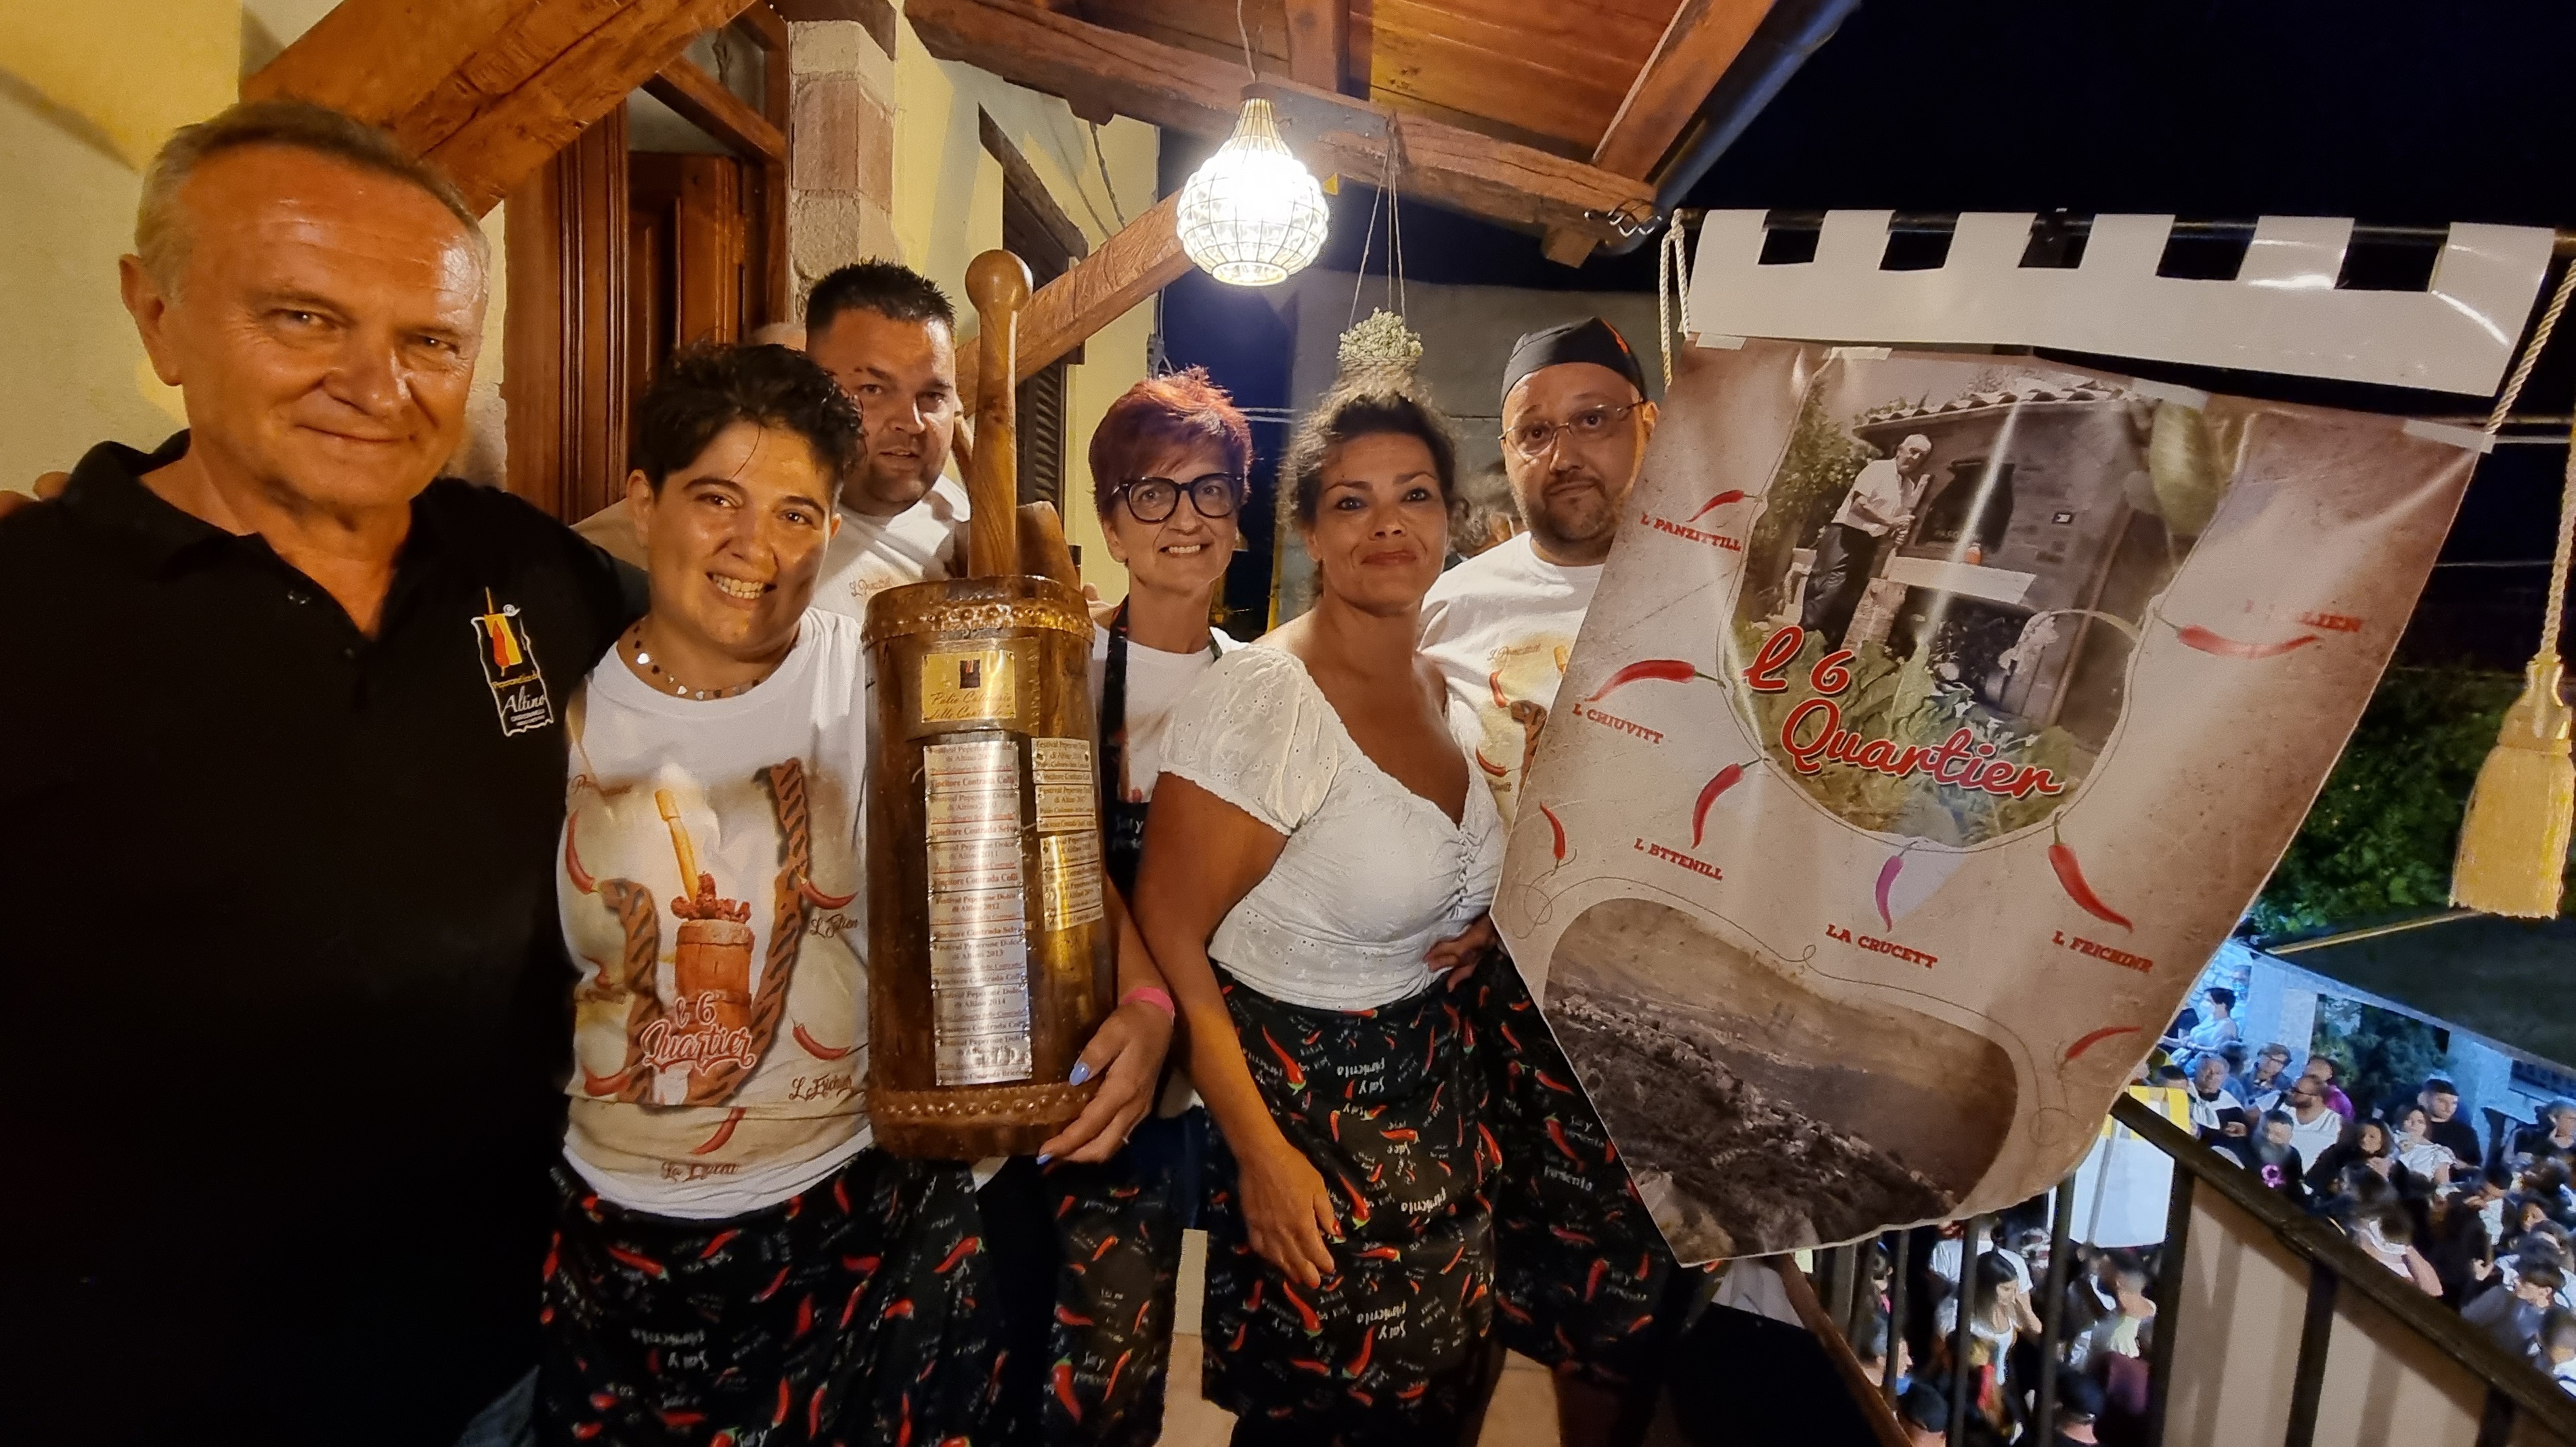 Le 6 Quartier vince il Palio culinario al XIII Festival del peperone dolce di Altino